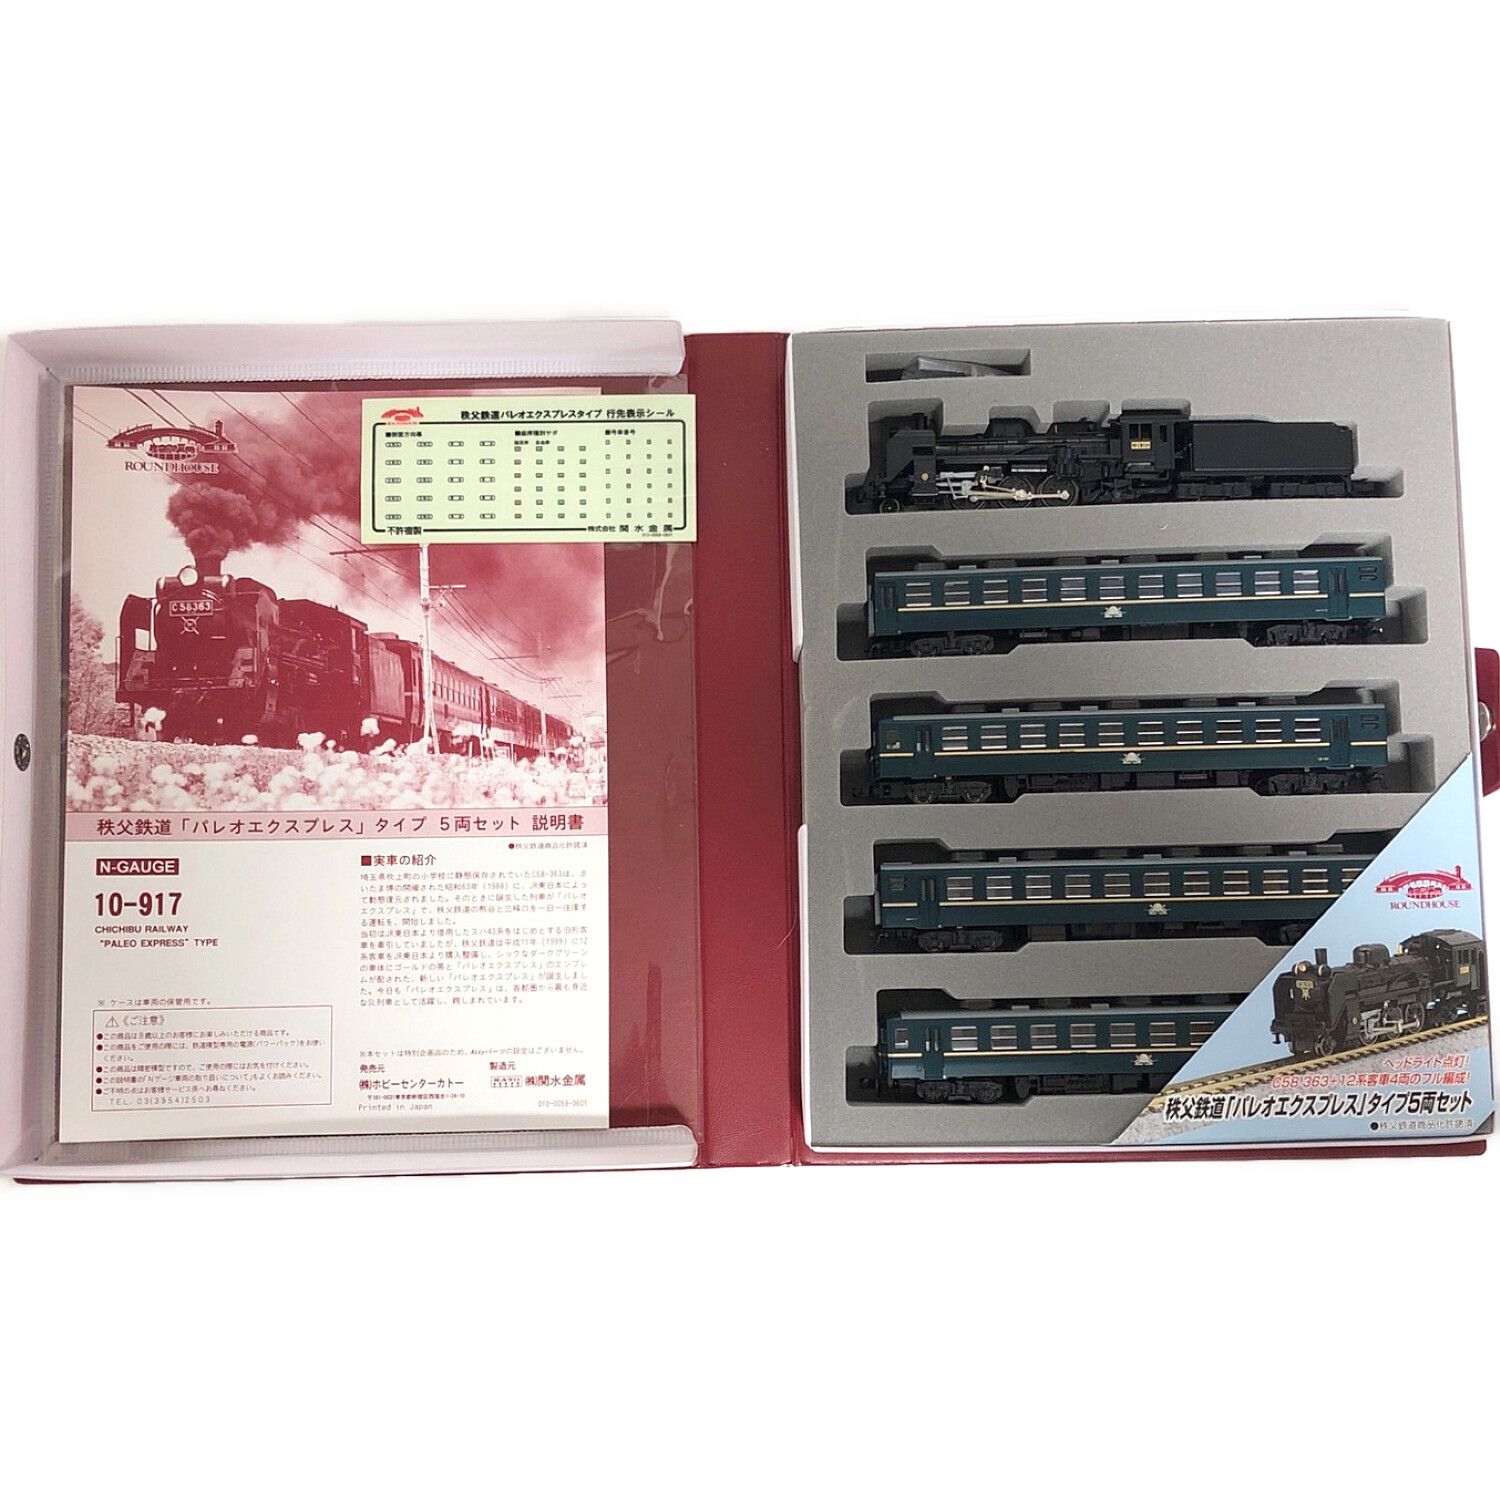 10-917 秩父鉄道「パレオエクスプレス」タイプ5両セット - 鉄道模型